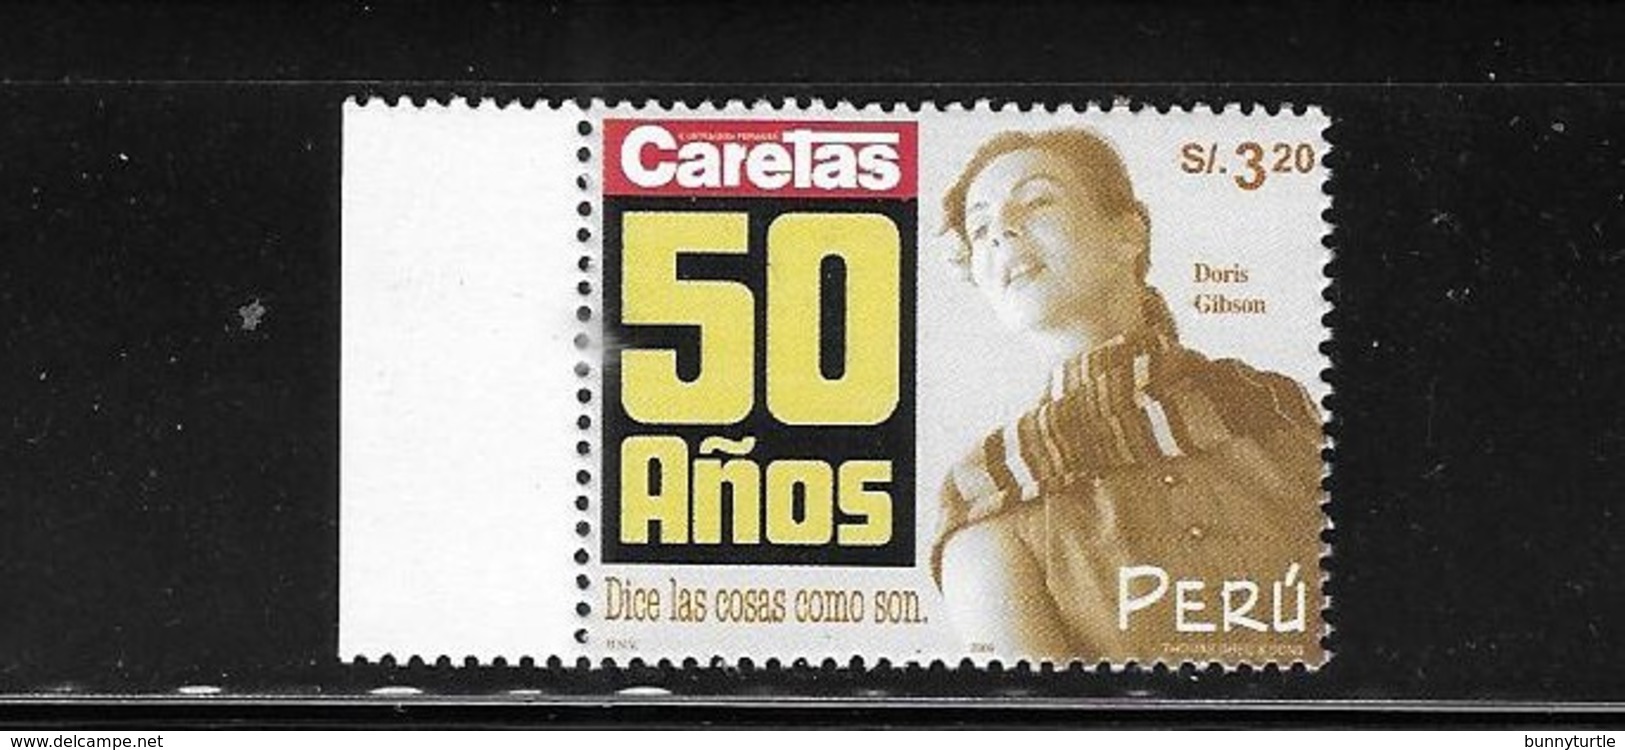 Peru 2000 Caretas Magazine 50th Anniversary MNH - Peru